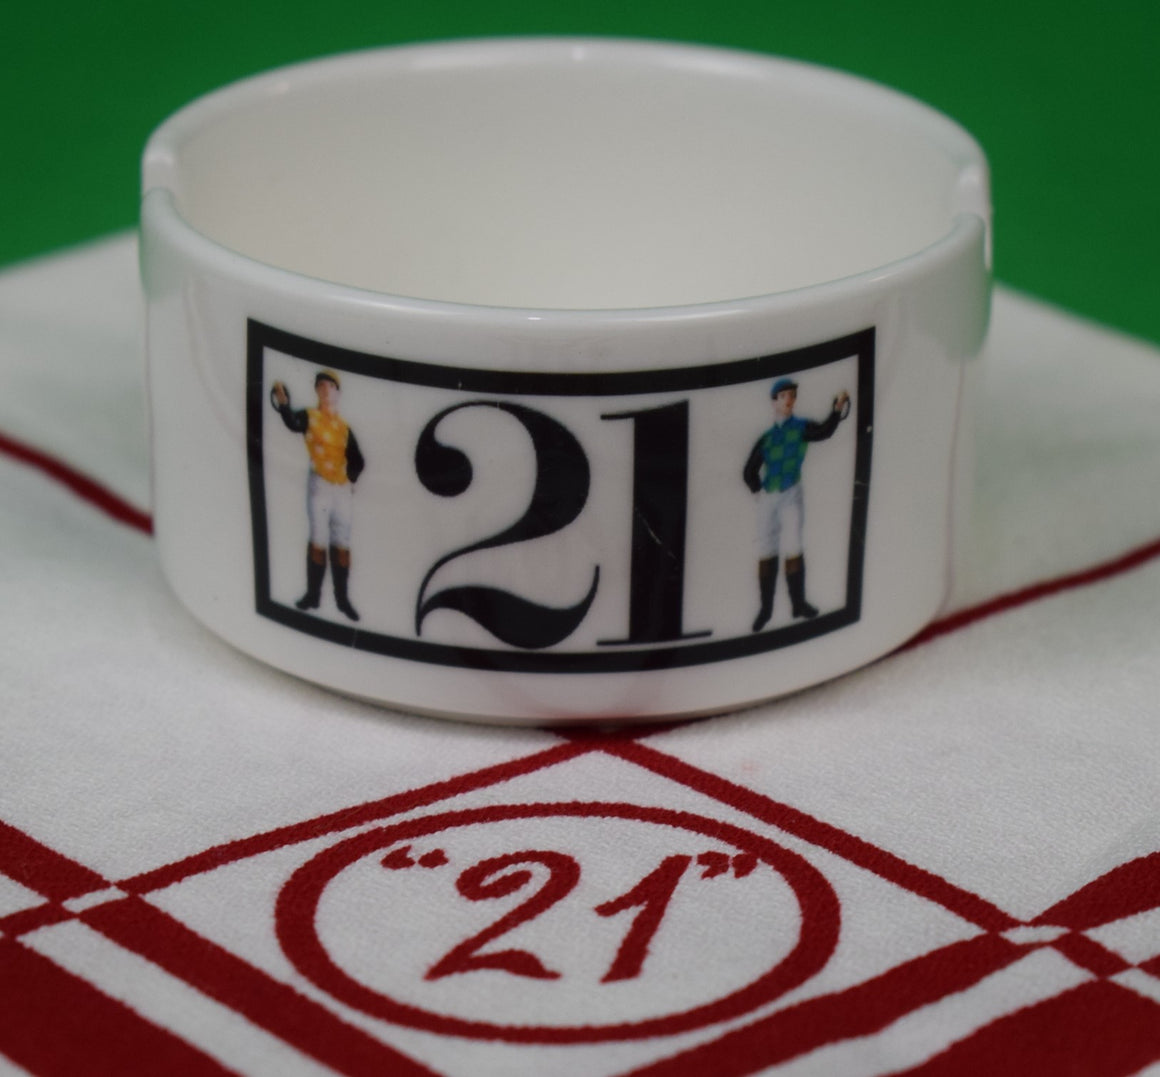 The "21" Club Jockey Ceramic Ashtray